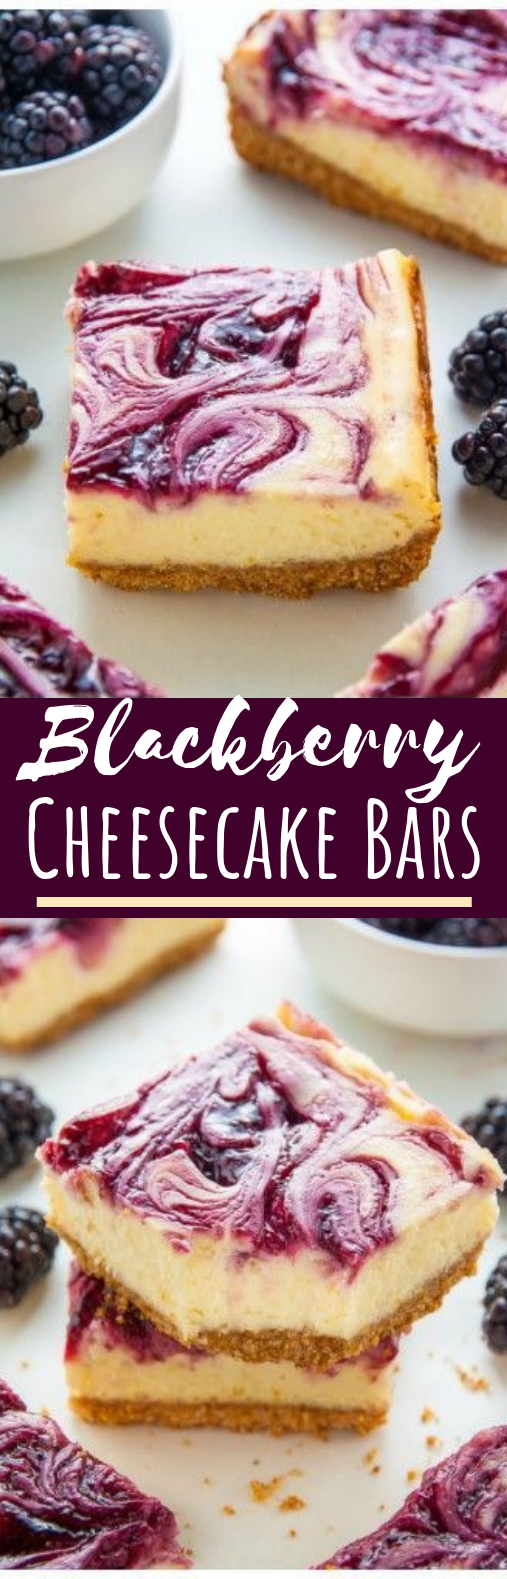 Blackberry Cheesecake Bars #desserts #cheesecake